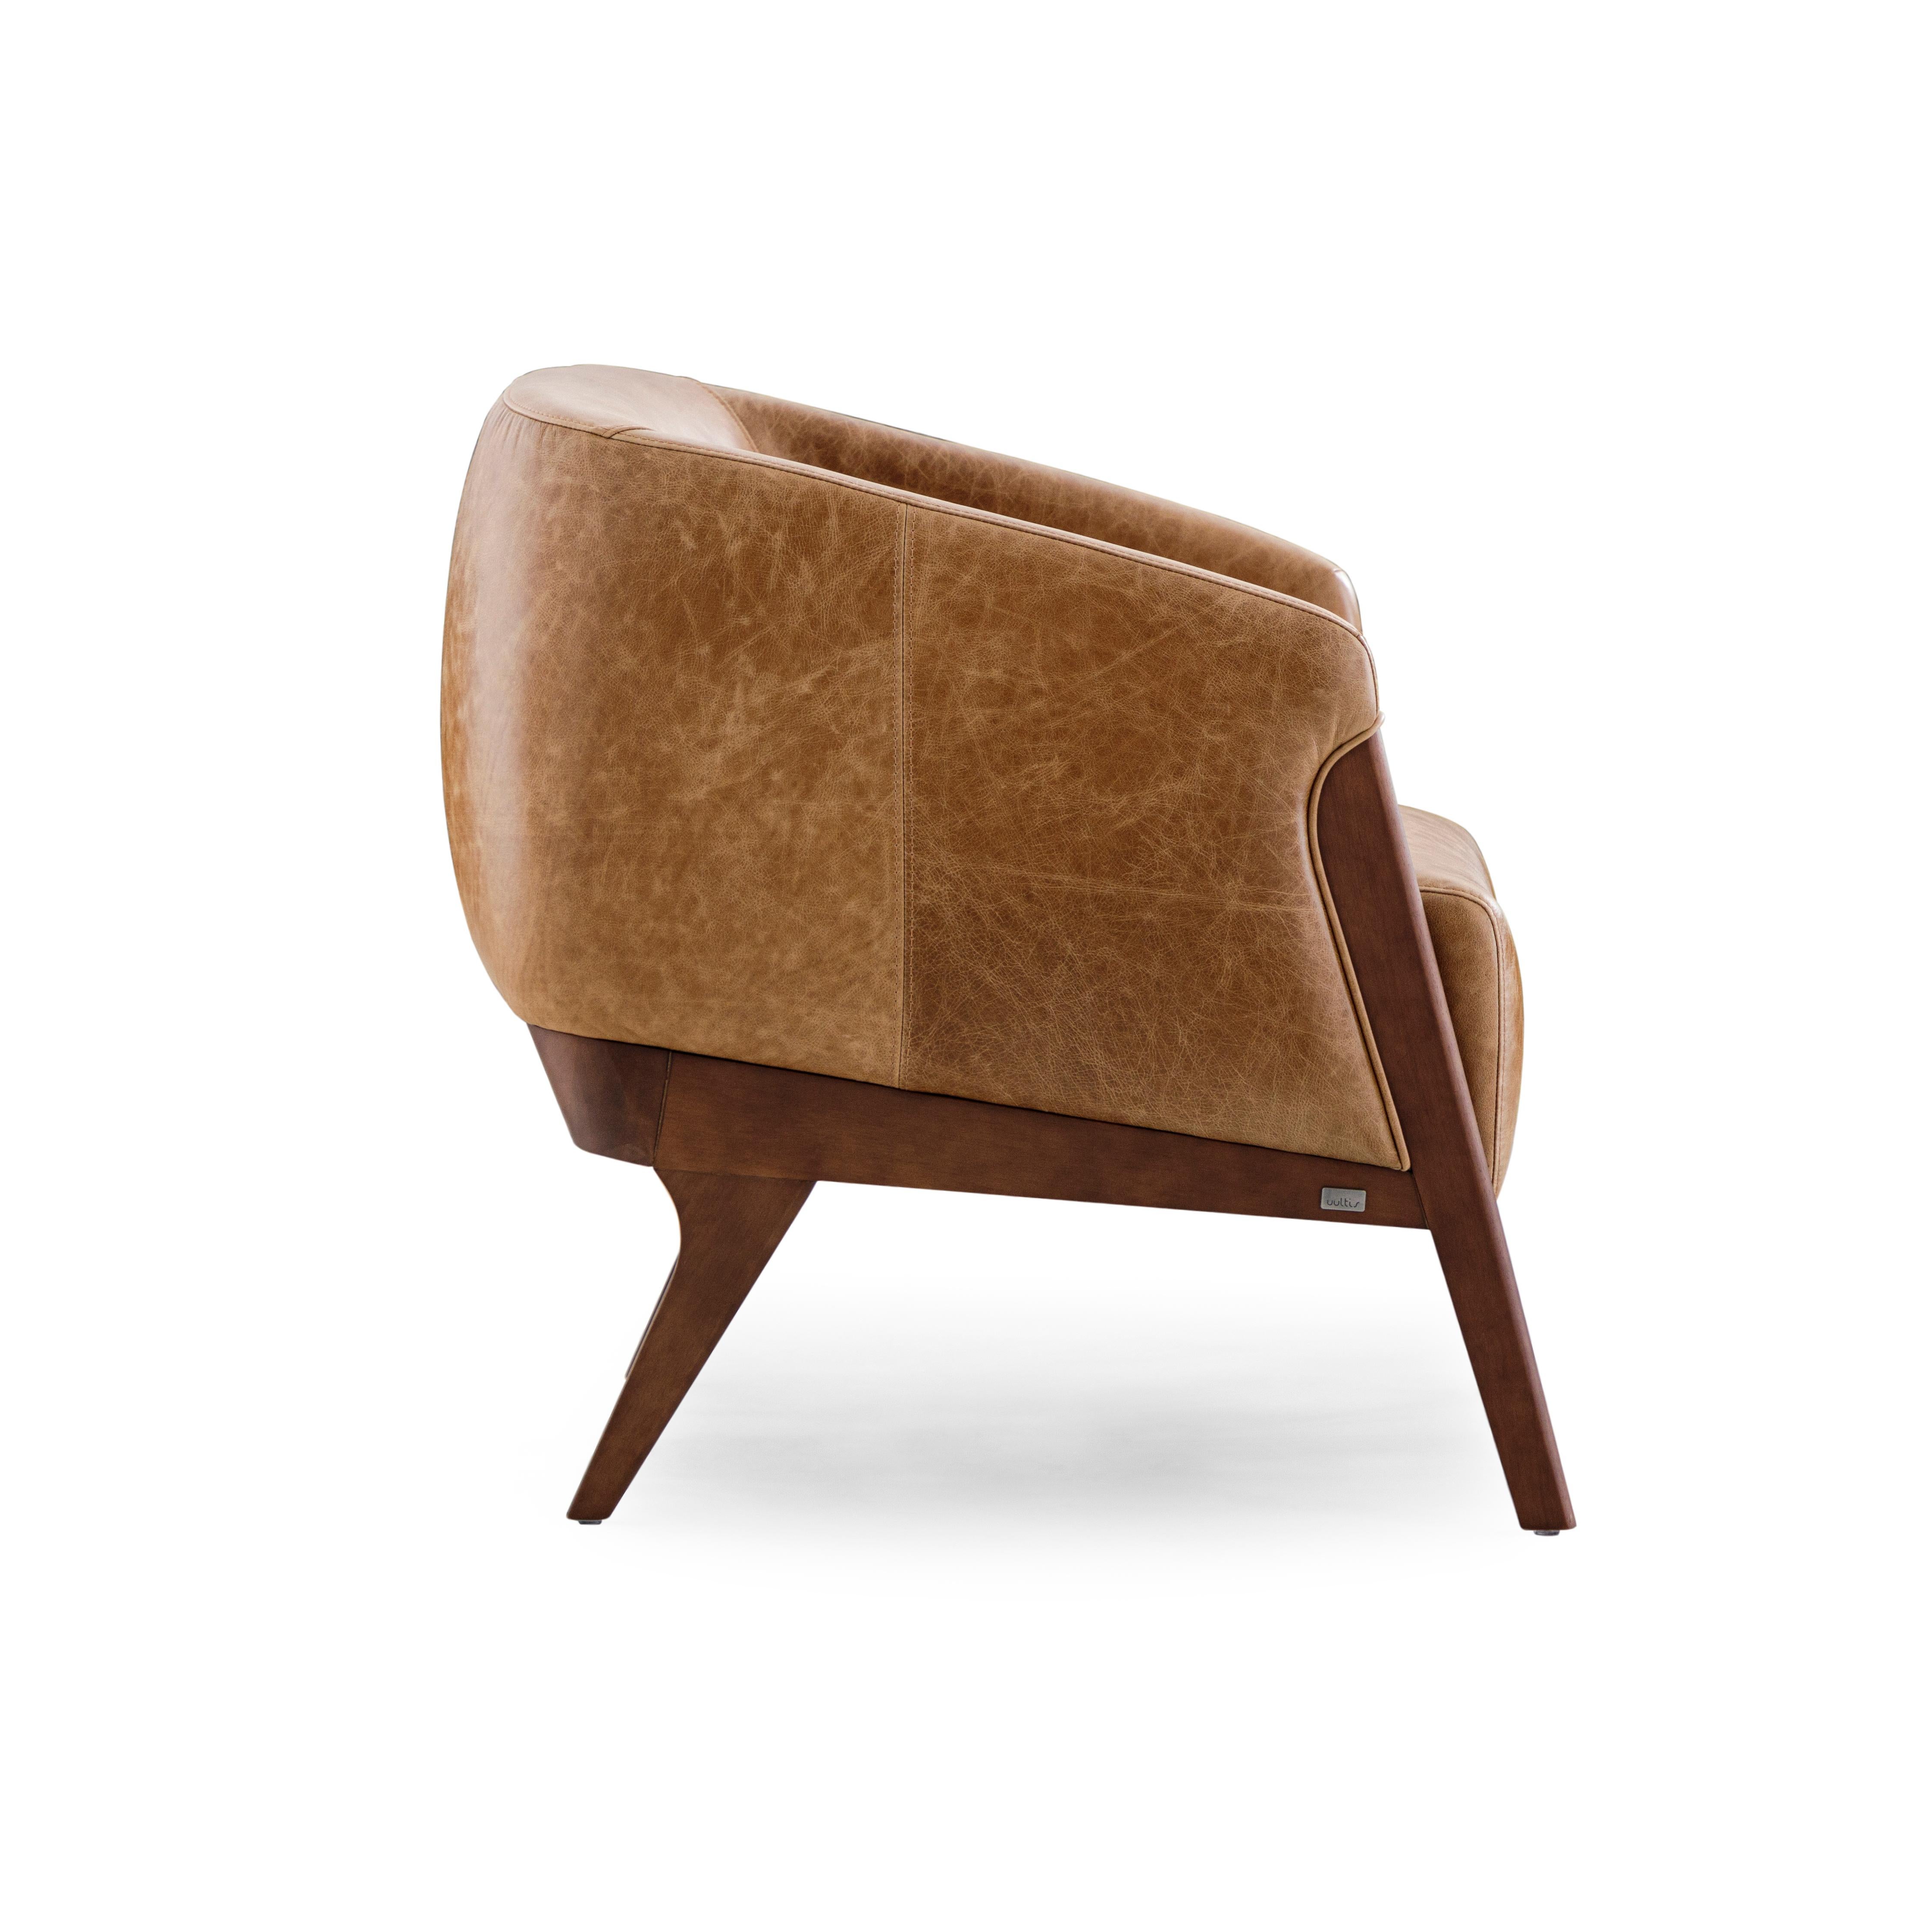 Der Sessel Abra ist mit seinem schönen braunen Lederbezug und dem Gestell aus Walnussholz eine einladende Ergänzung für jeden Raum in Ihrer Einrichtung. Dieser Sessel wurde von unserem fantastischen Team aus Architekten und Designern von Uultis